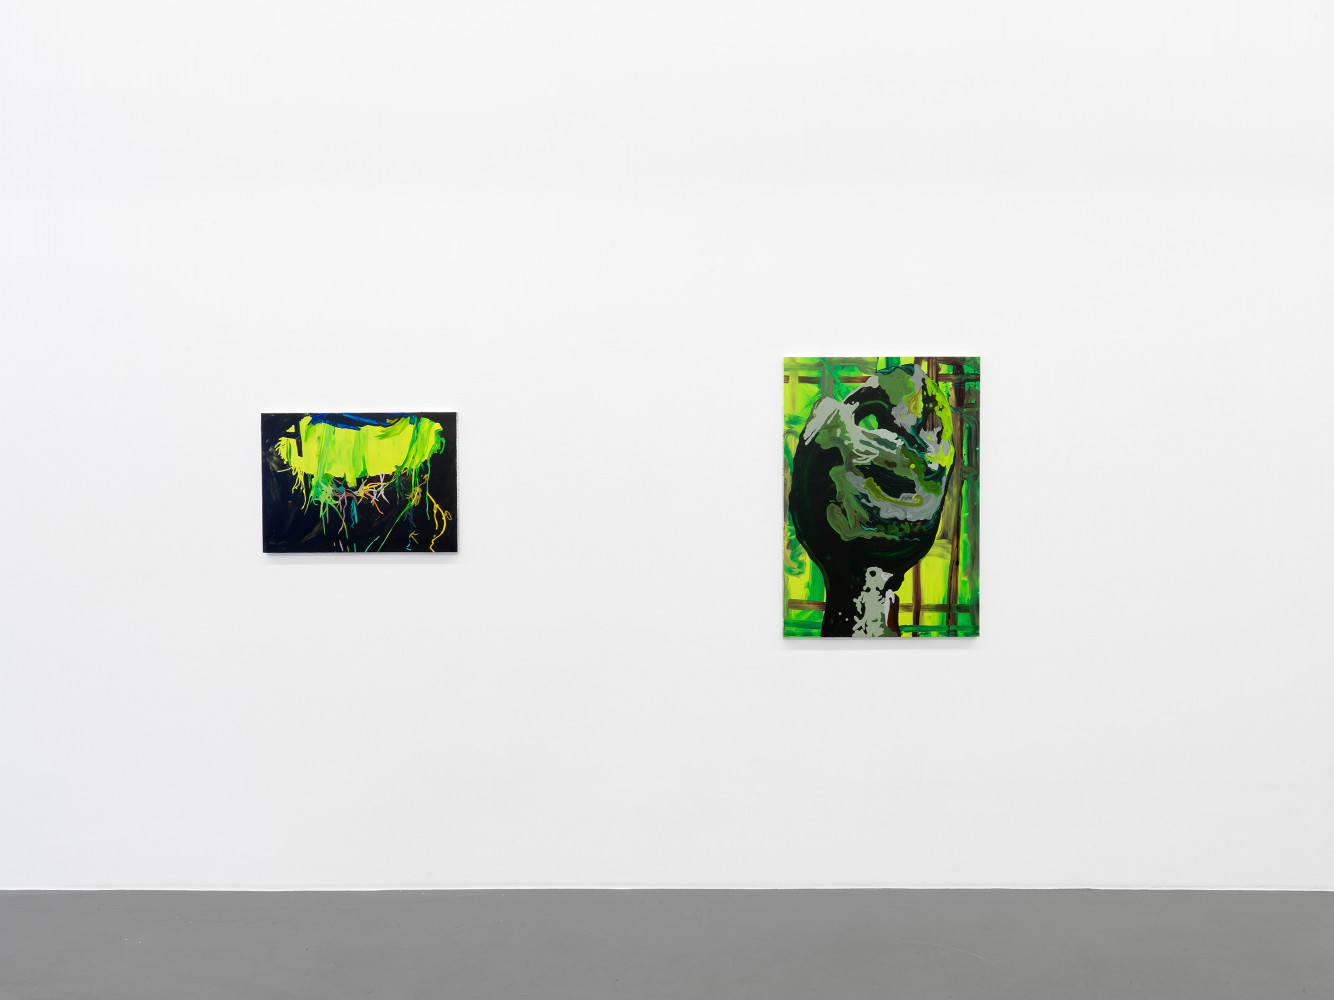 Clare Woods, ‘The Dark Matter’, Installation view, Buchmann Galerie